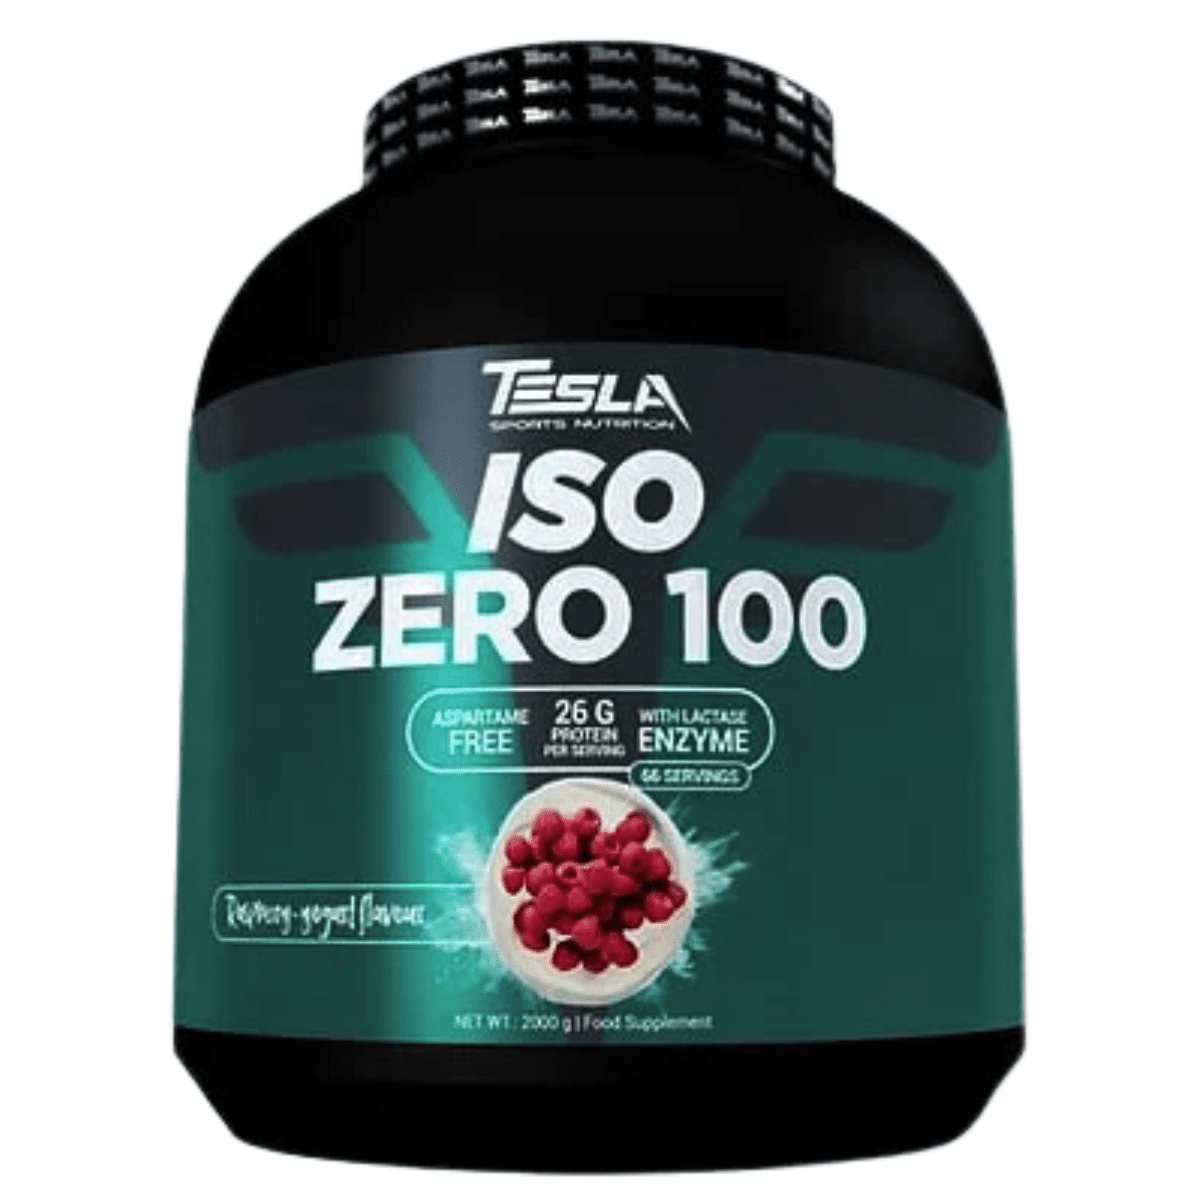 Tesla Iso Zero 100 - 0